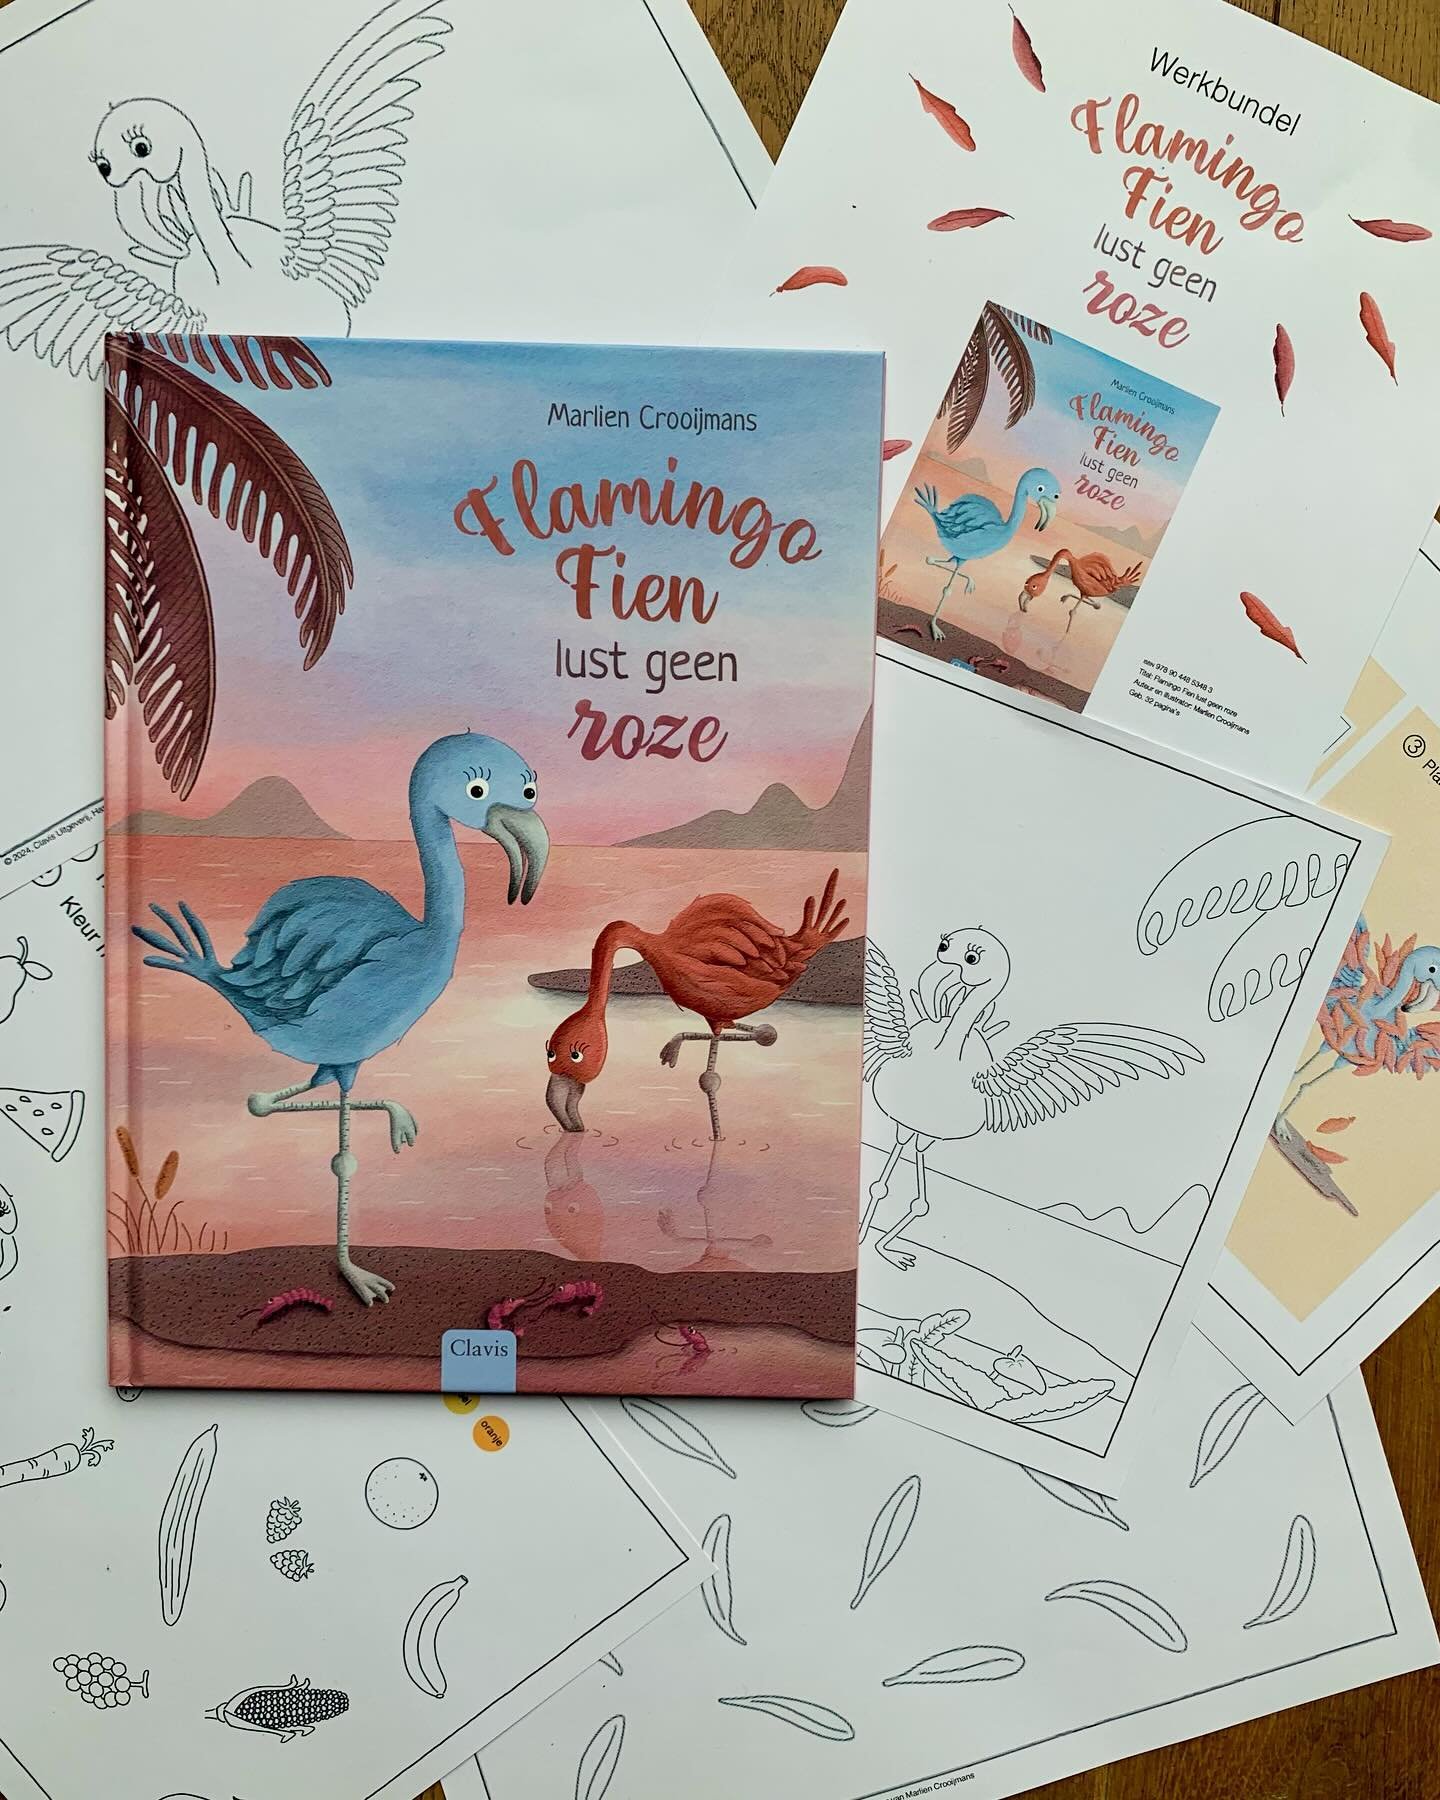 De activiteitenbundel van &lsquo;Flamingo Fien lust geen roze&rsquo; is nu beschikbaar!

Er zitten leuke activiteiten zoals spelletjes en knutselwerken in. Leuk voor bij het boek, maar deze bundel is zeker ook leuk als je het boek nog niet gelezen he